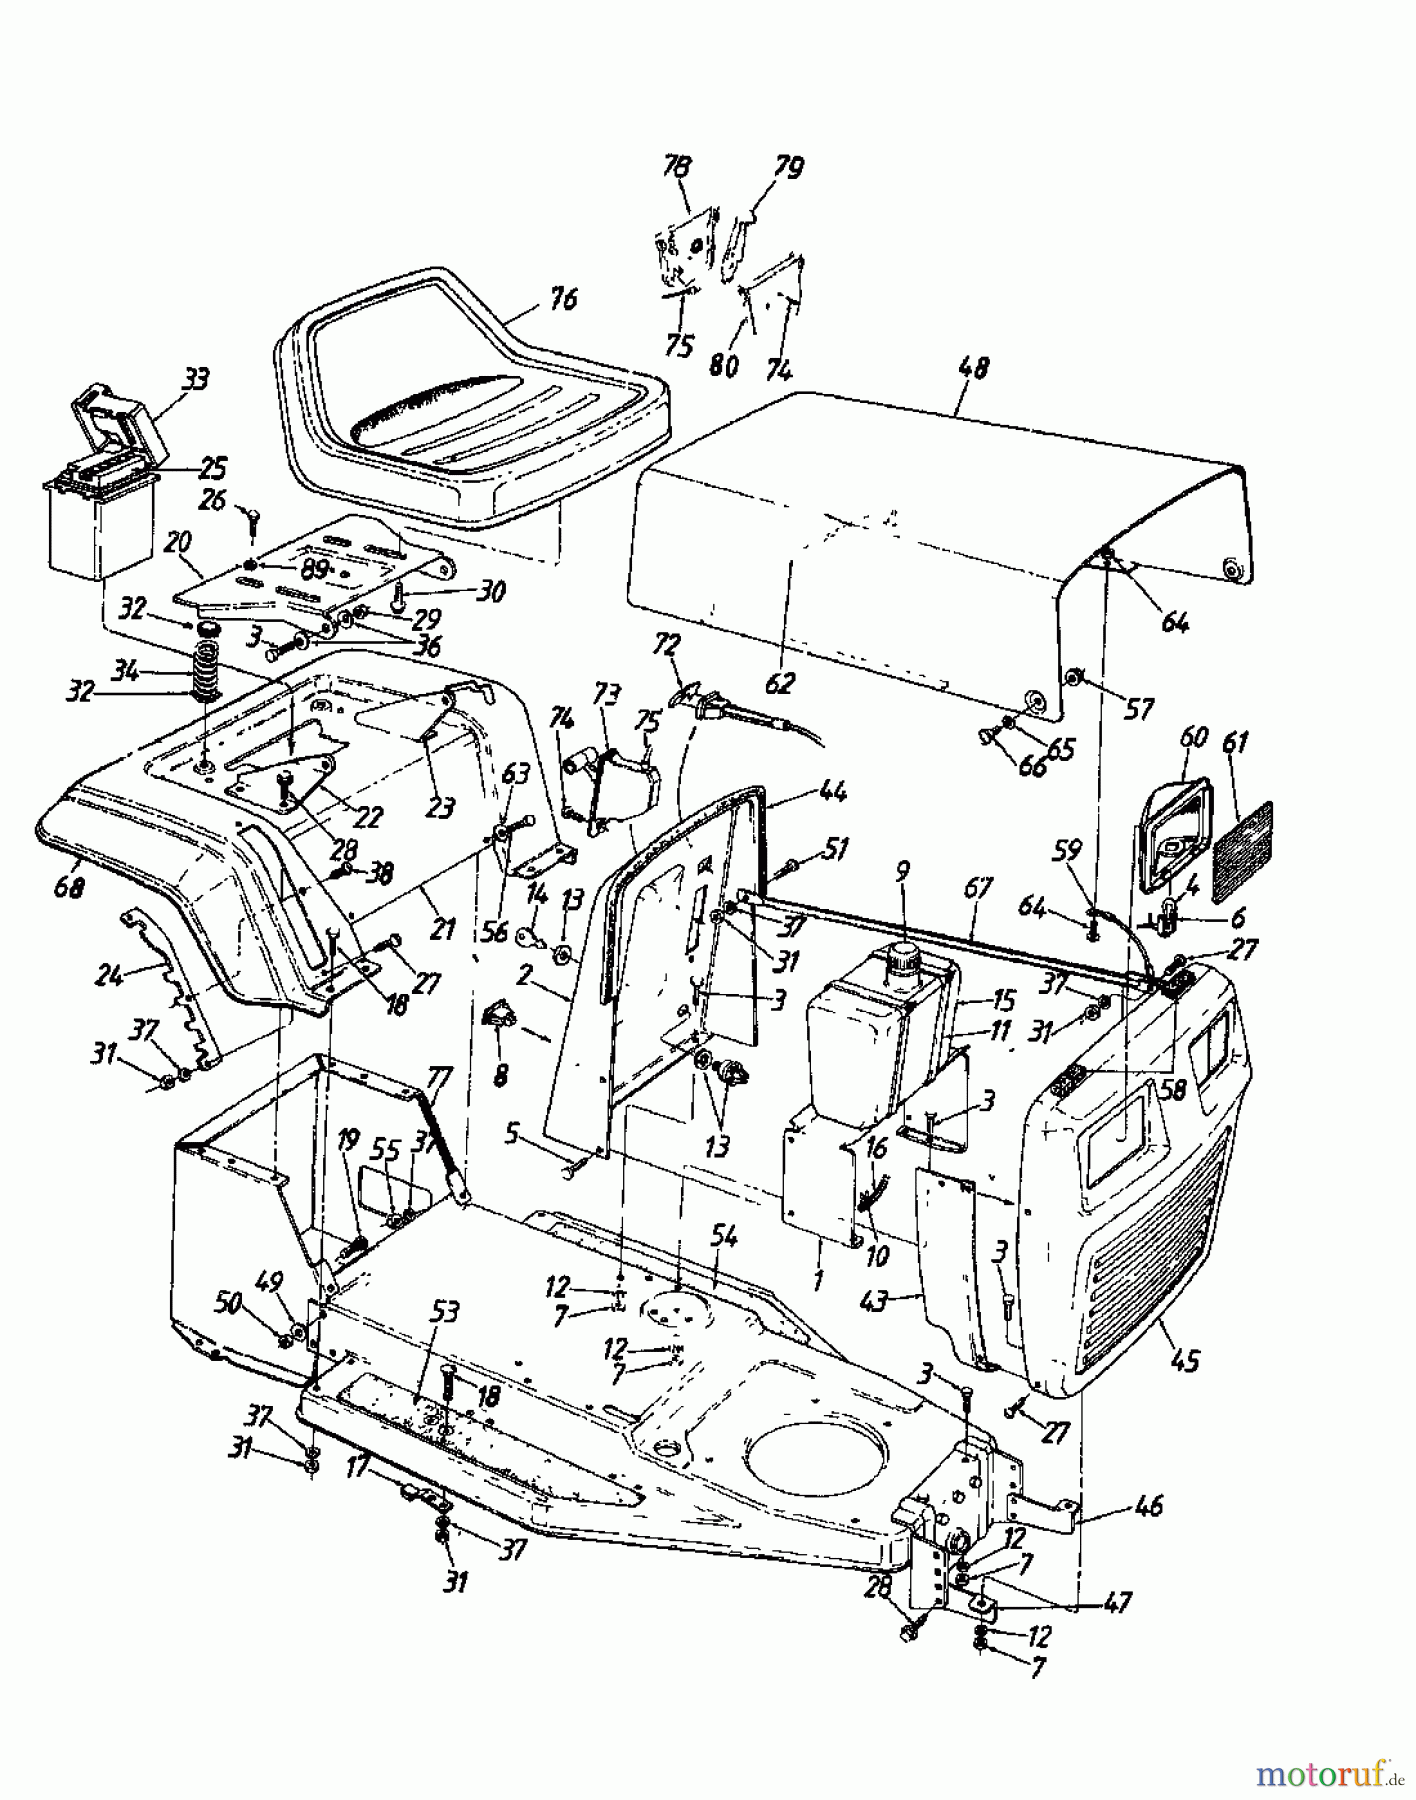  MTD Rasentraktoren 11/81 137-3320  (1987) Armaturenbrett, Motorhaube, Sitzwanne